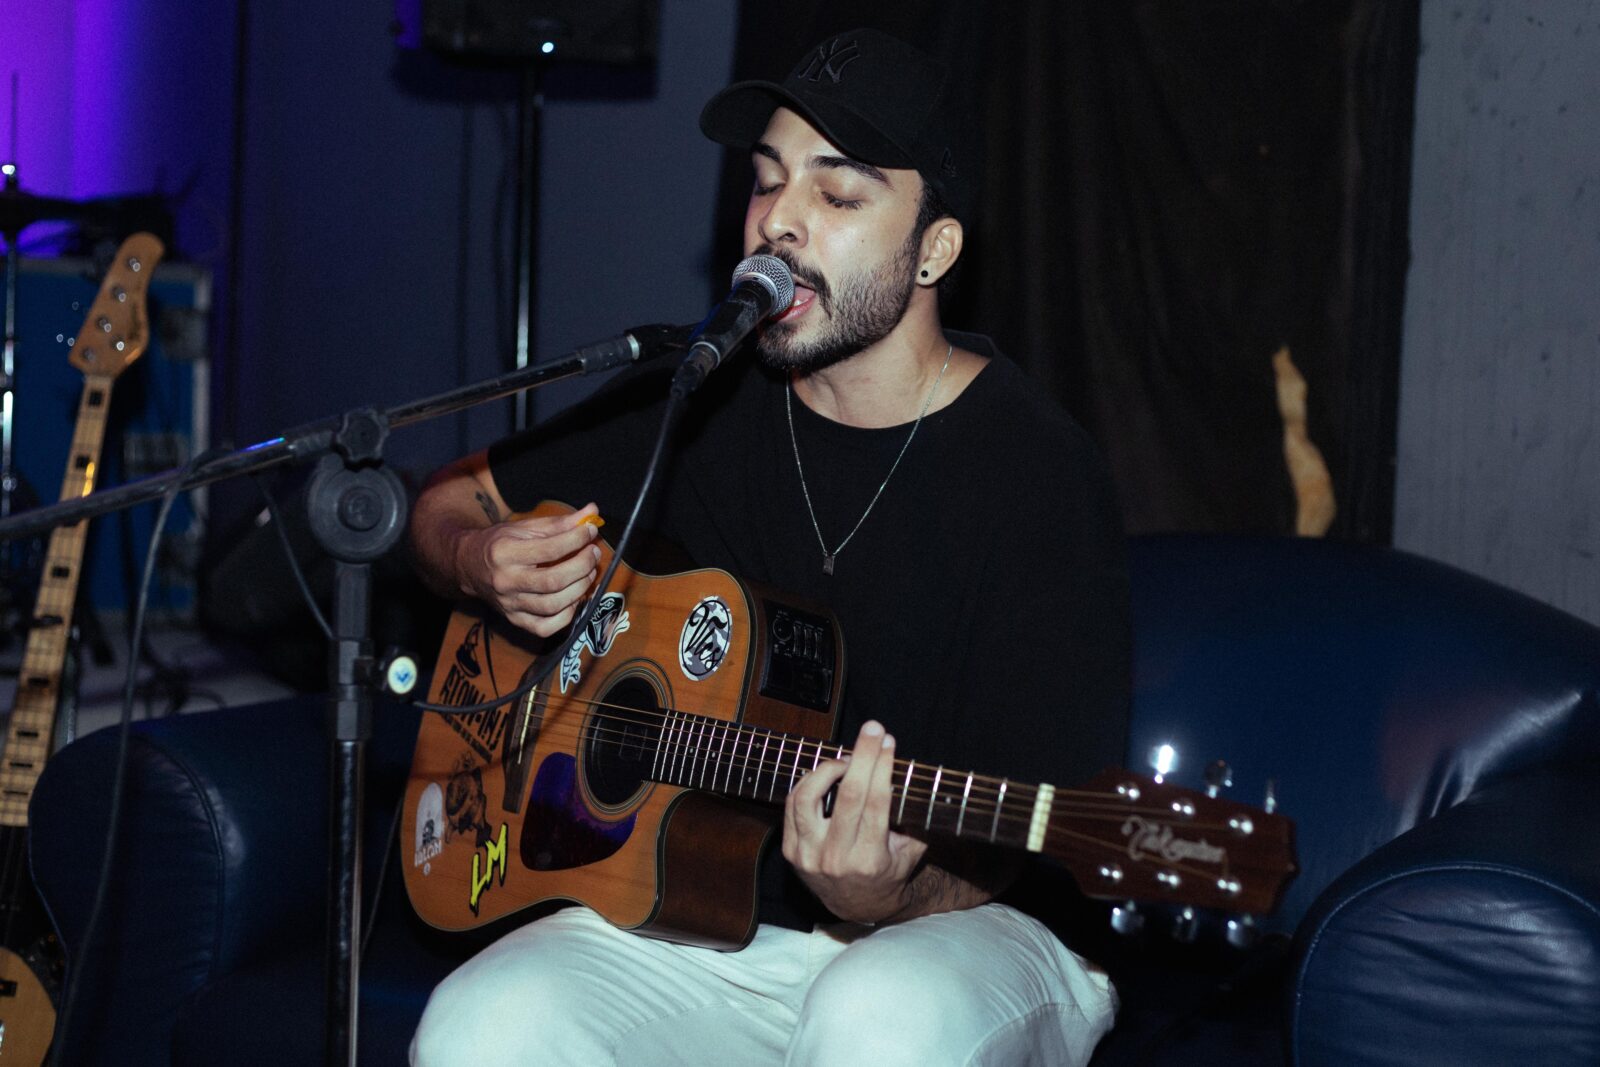 Conato de blusa preta com o violão e um microfone